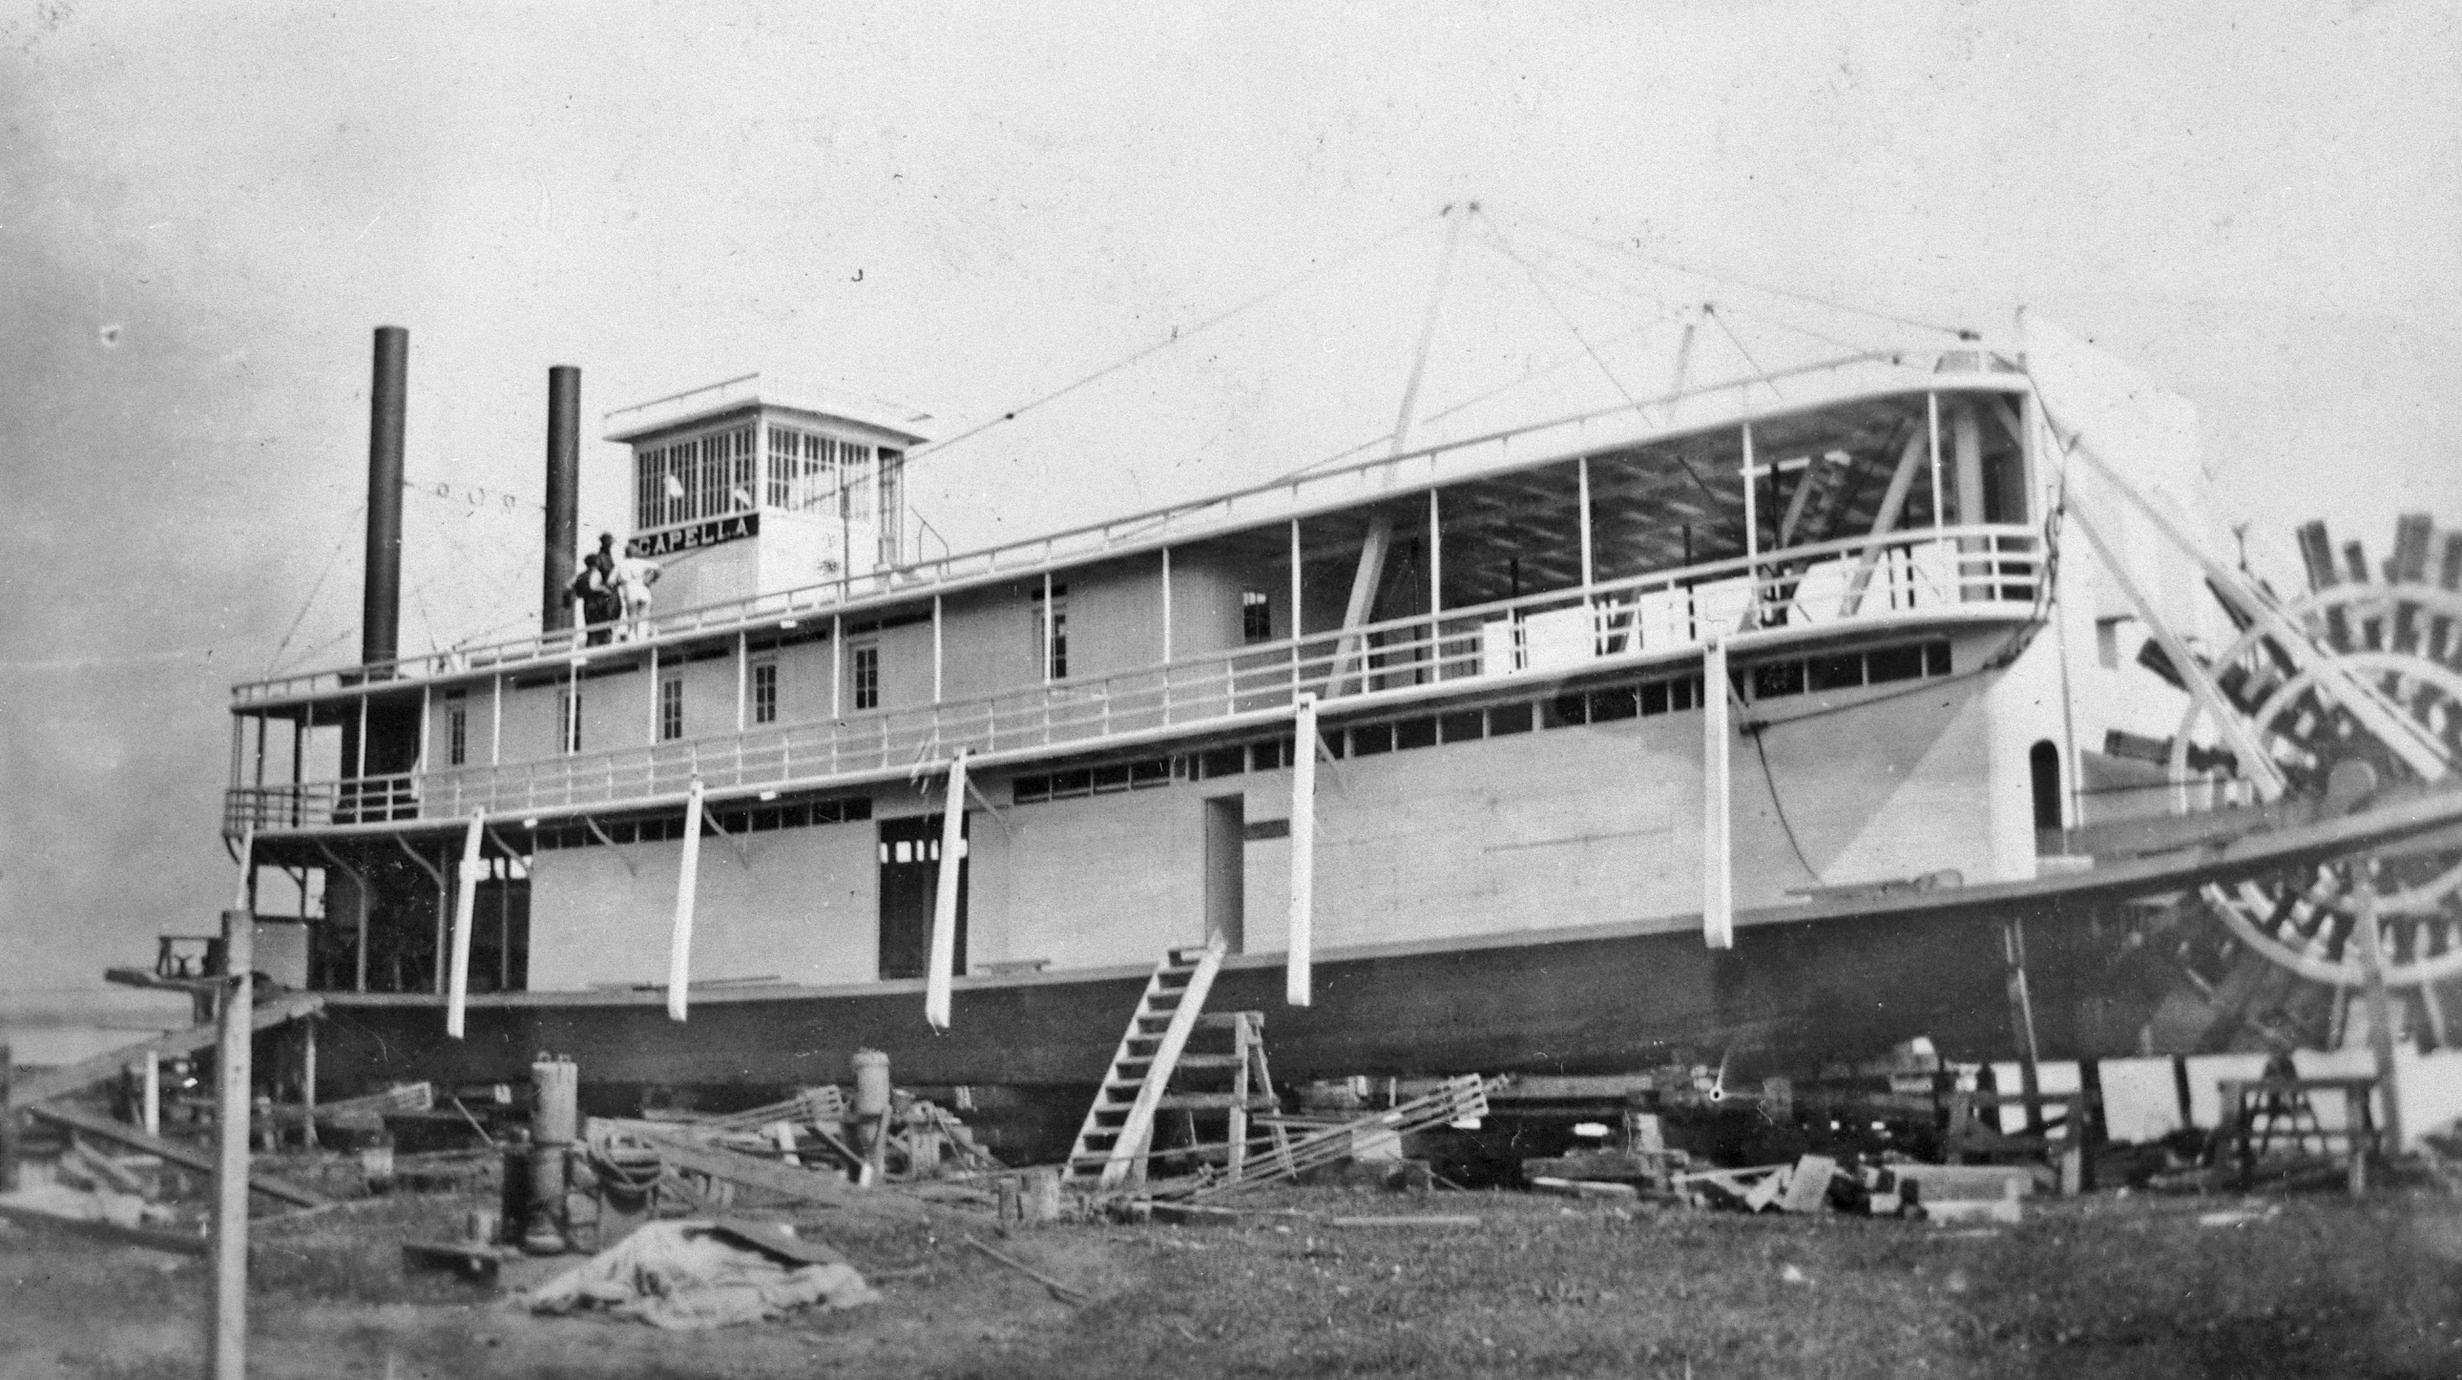 Capella (Towboat, 1922-1925?)